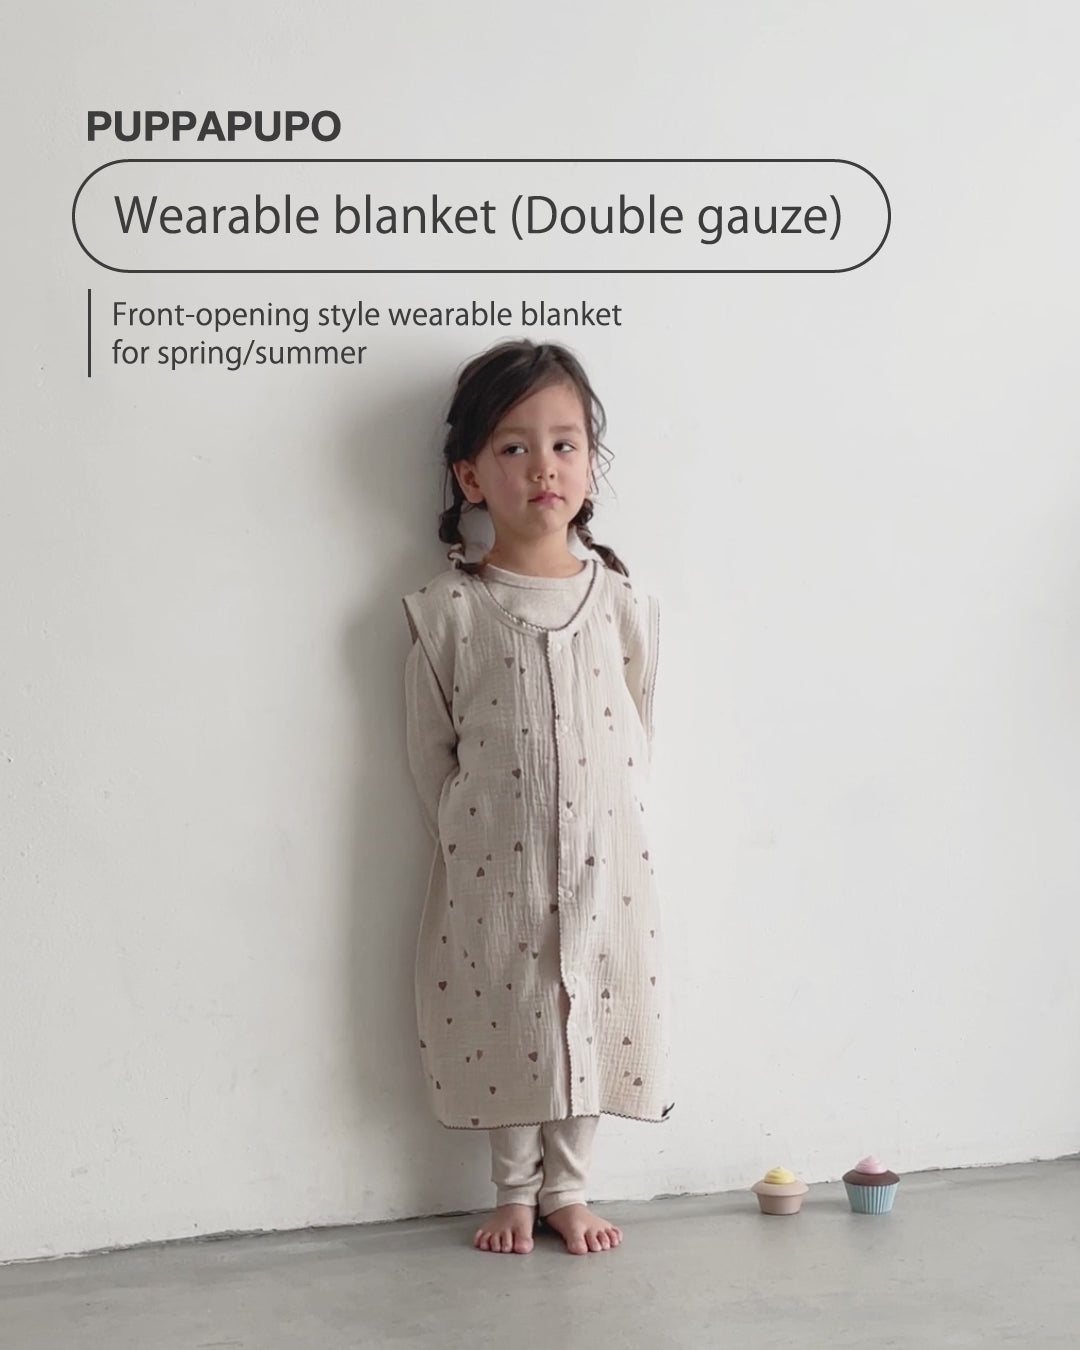 Wearable blanket (Double gauze)